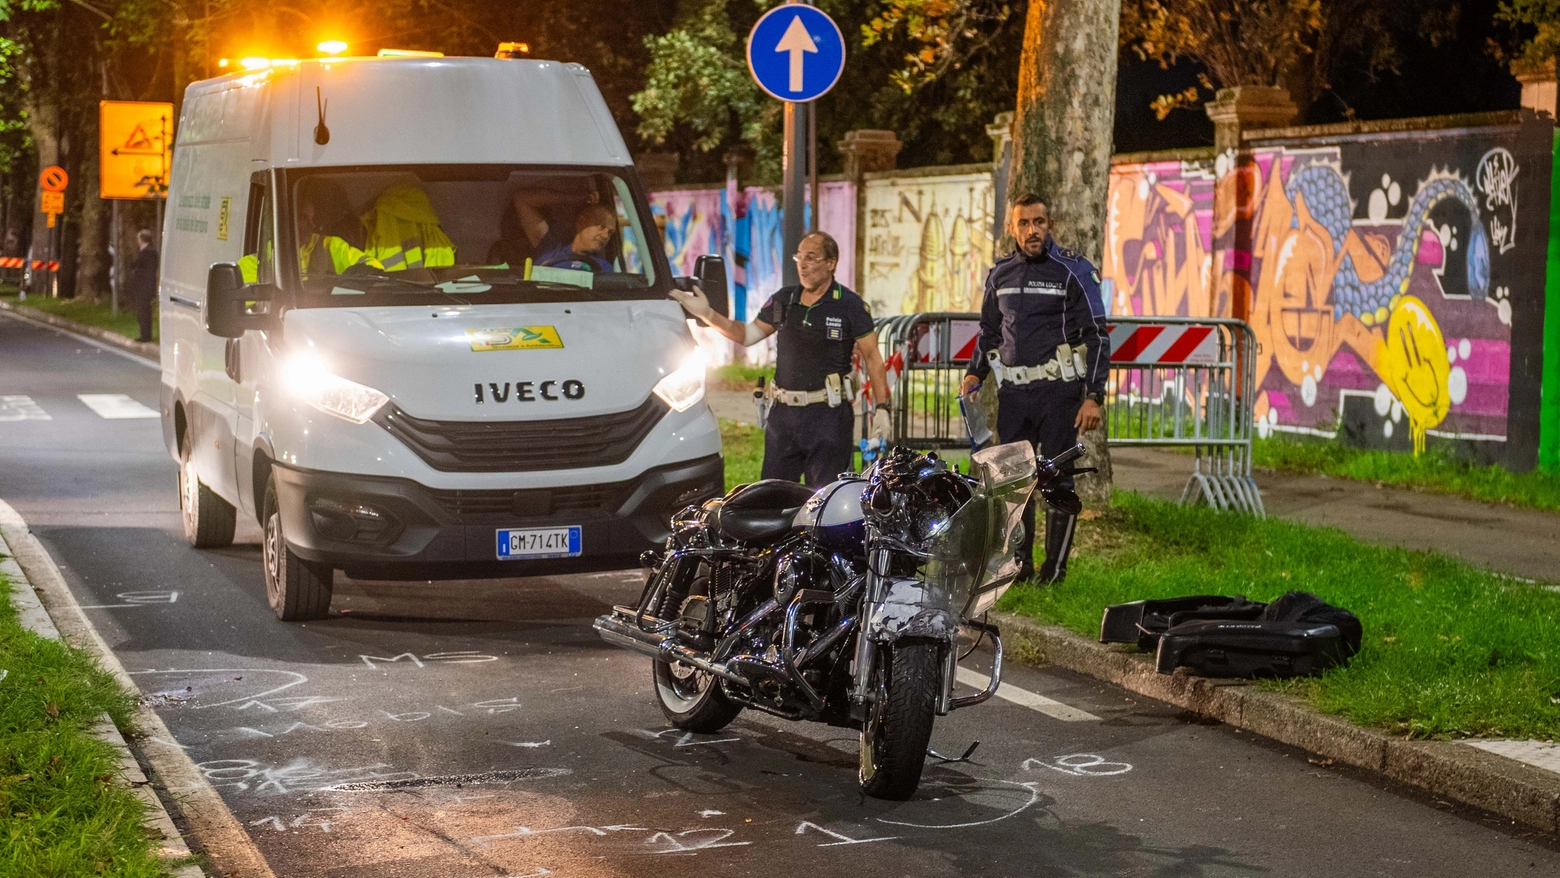 L'Harley Davidson coinvolta nell'incidente tra via Diomede e via Cassino in zona San Siro